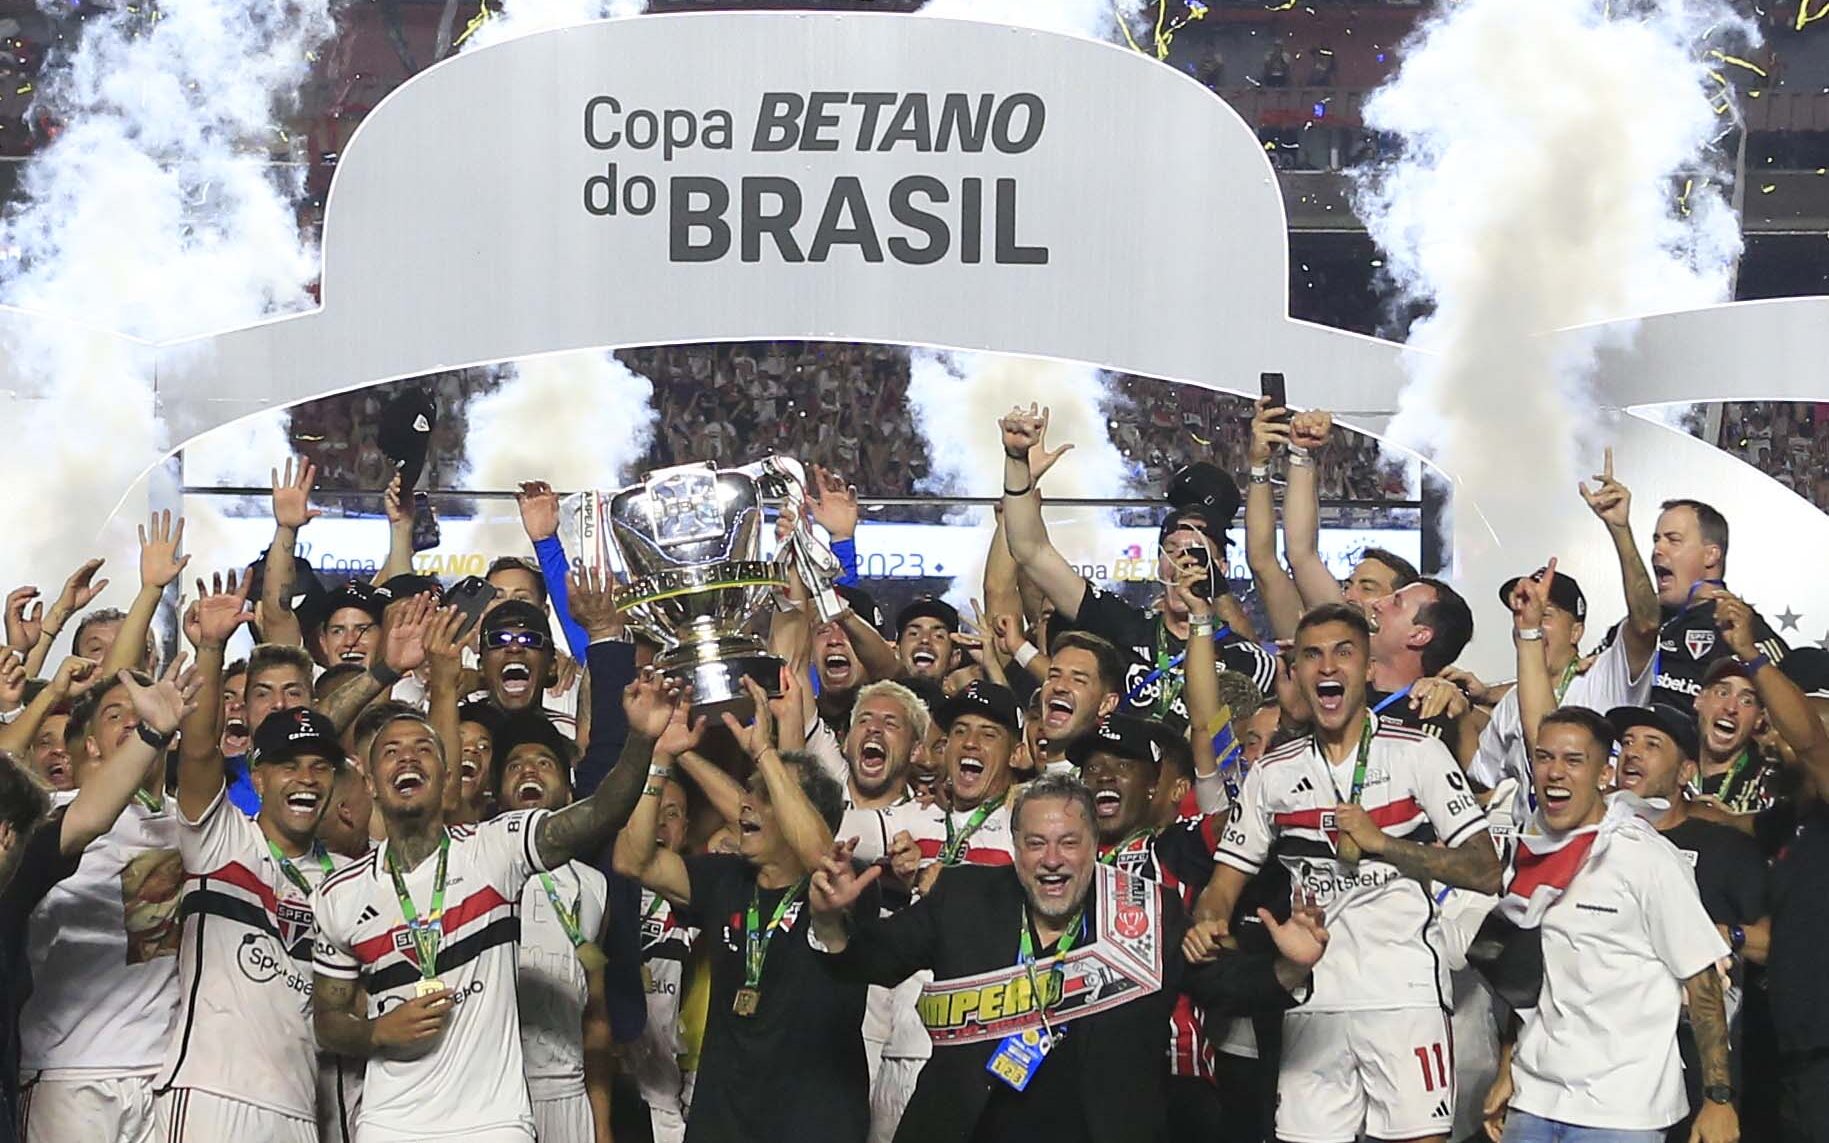 São Paulo é Campeão da Copa do Brasil 2023 - SPFC